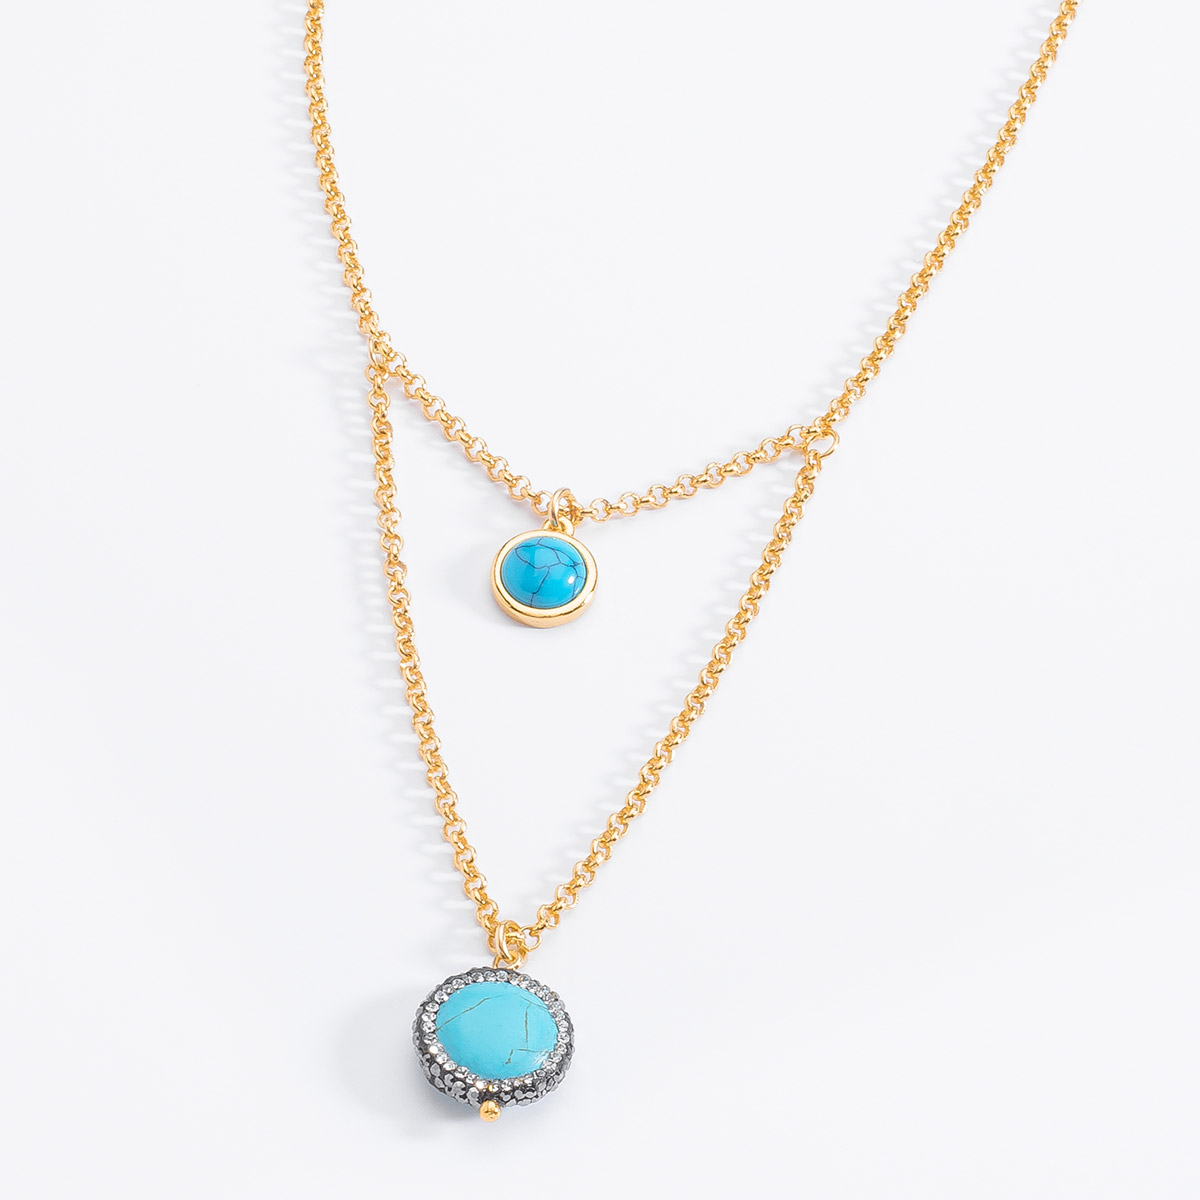 Espectacular collar bañado en oro con dos piedras en tono azul turquesa.
-Collar con dos dijes
-35 cm + 10 cm ext.
-Oro 18K